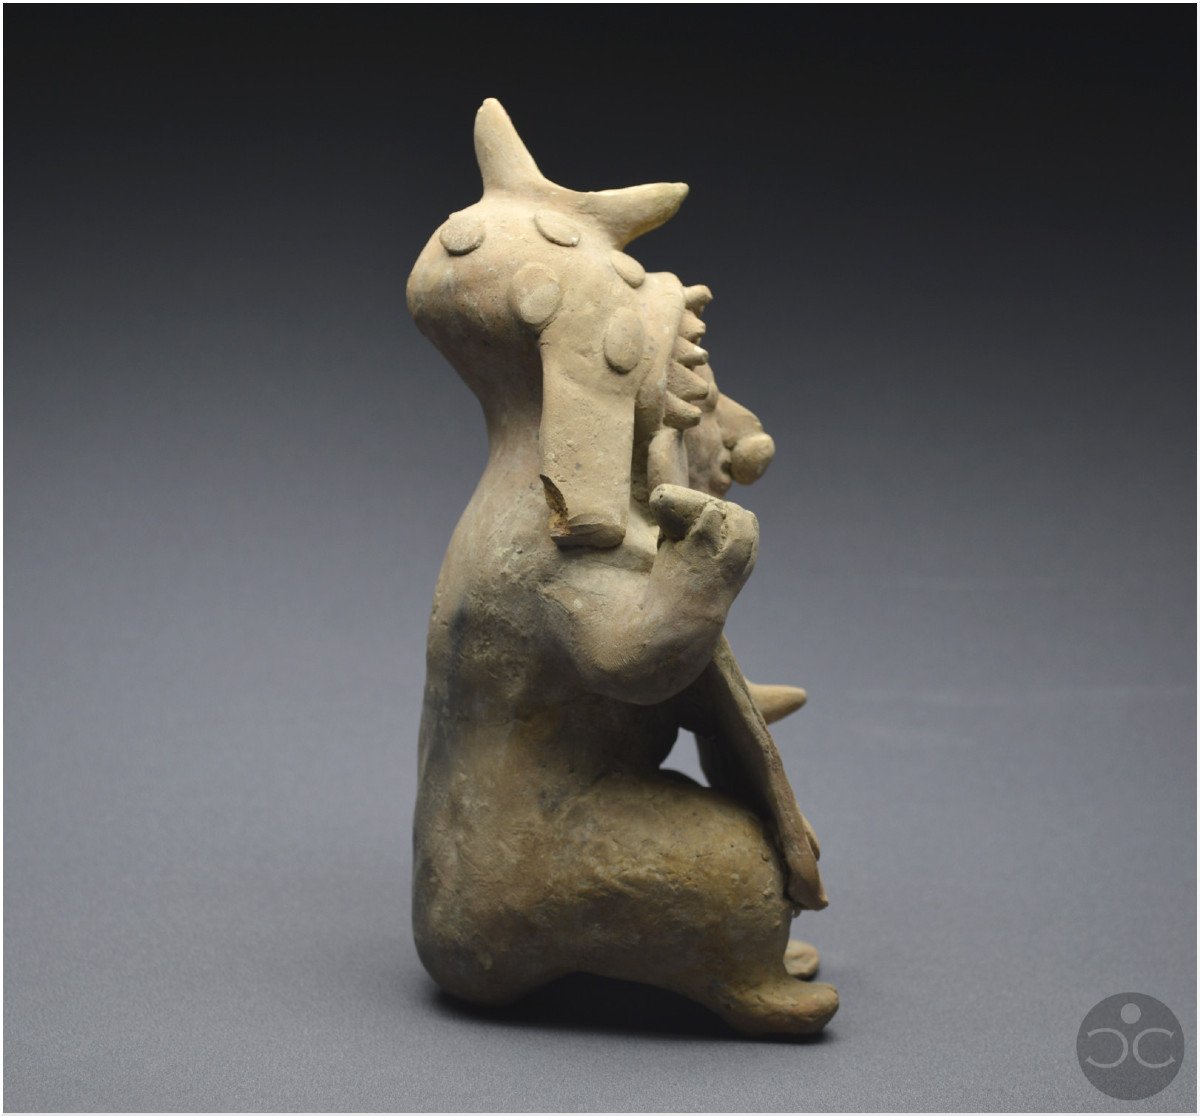 Équateur, 500 av - 500 ap J. -C., Culture Jama-Coaque, Shaman aux offrandes, Céramique ocre-photo-1